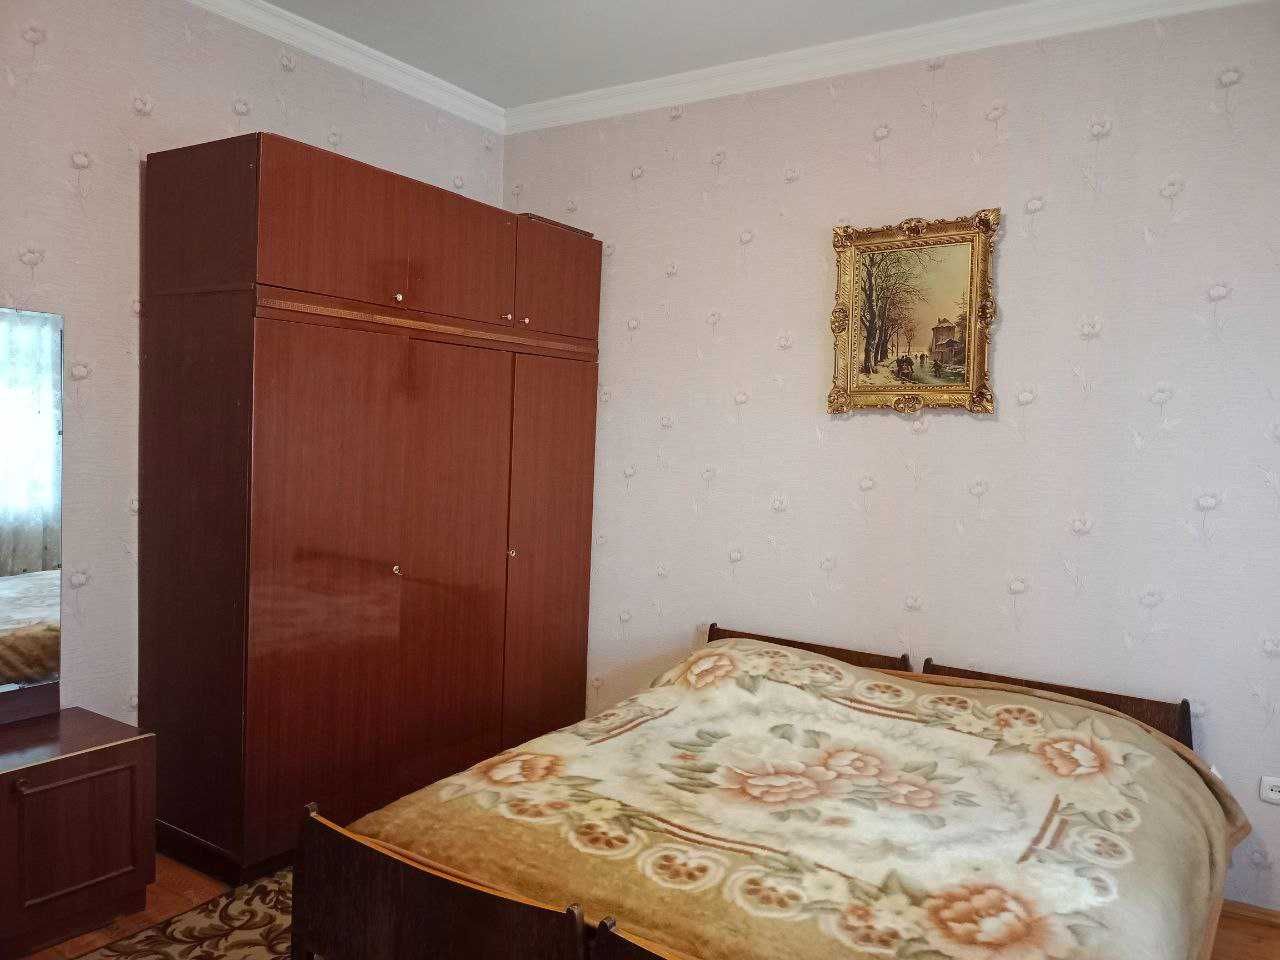 Сдается 2-комнатная квартире в центре Ташкента